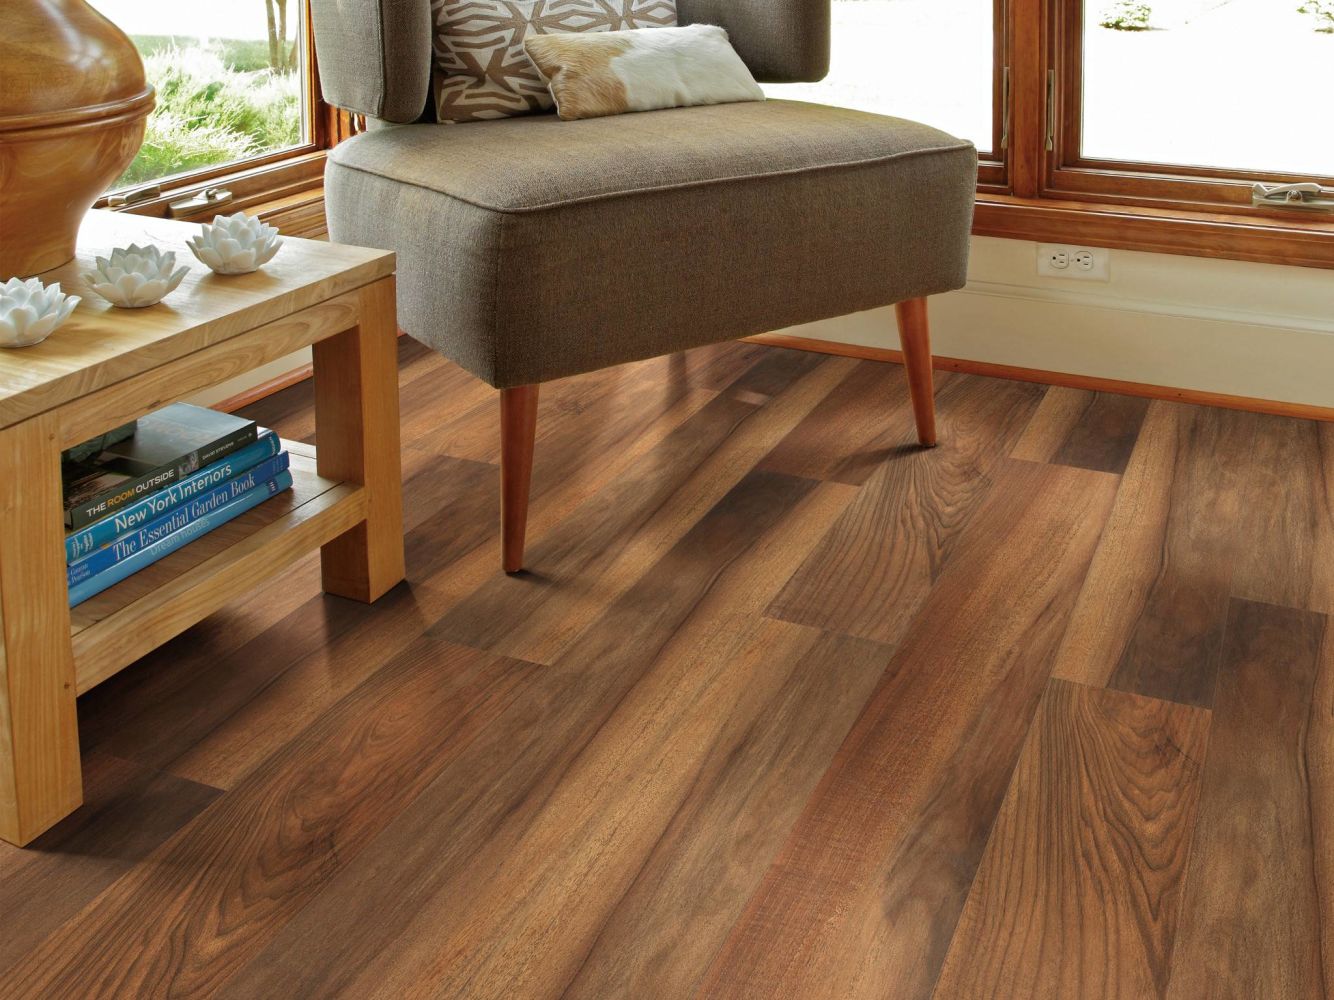 Shaw Floors Colortile Spc Cp Embark On Click Amber Oak 00820_CV161